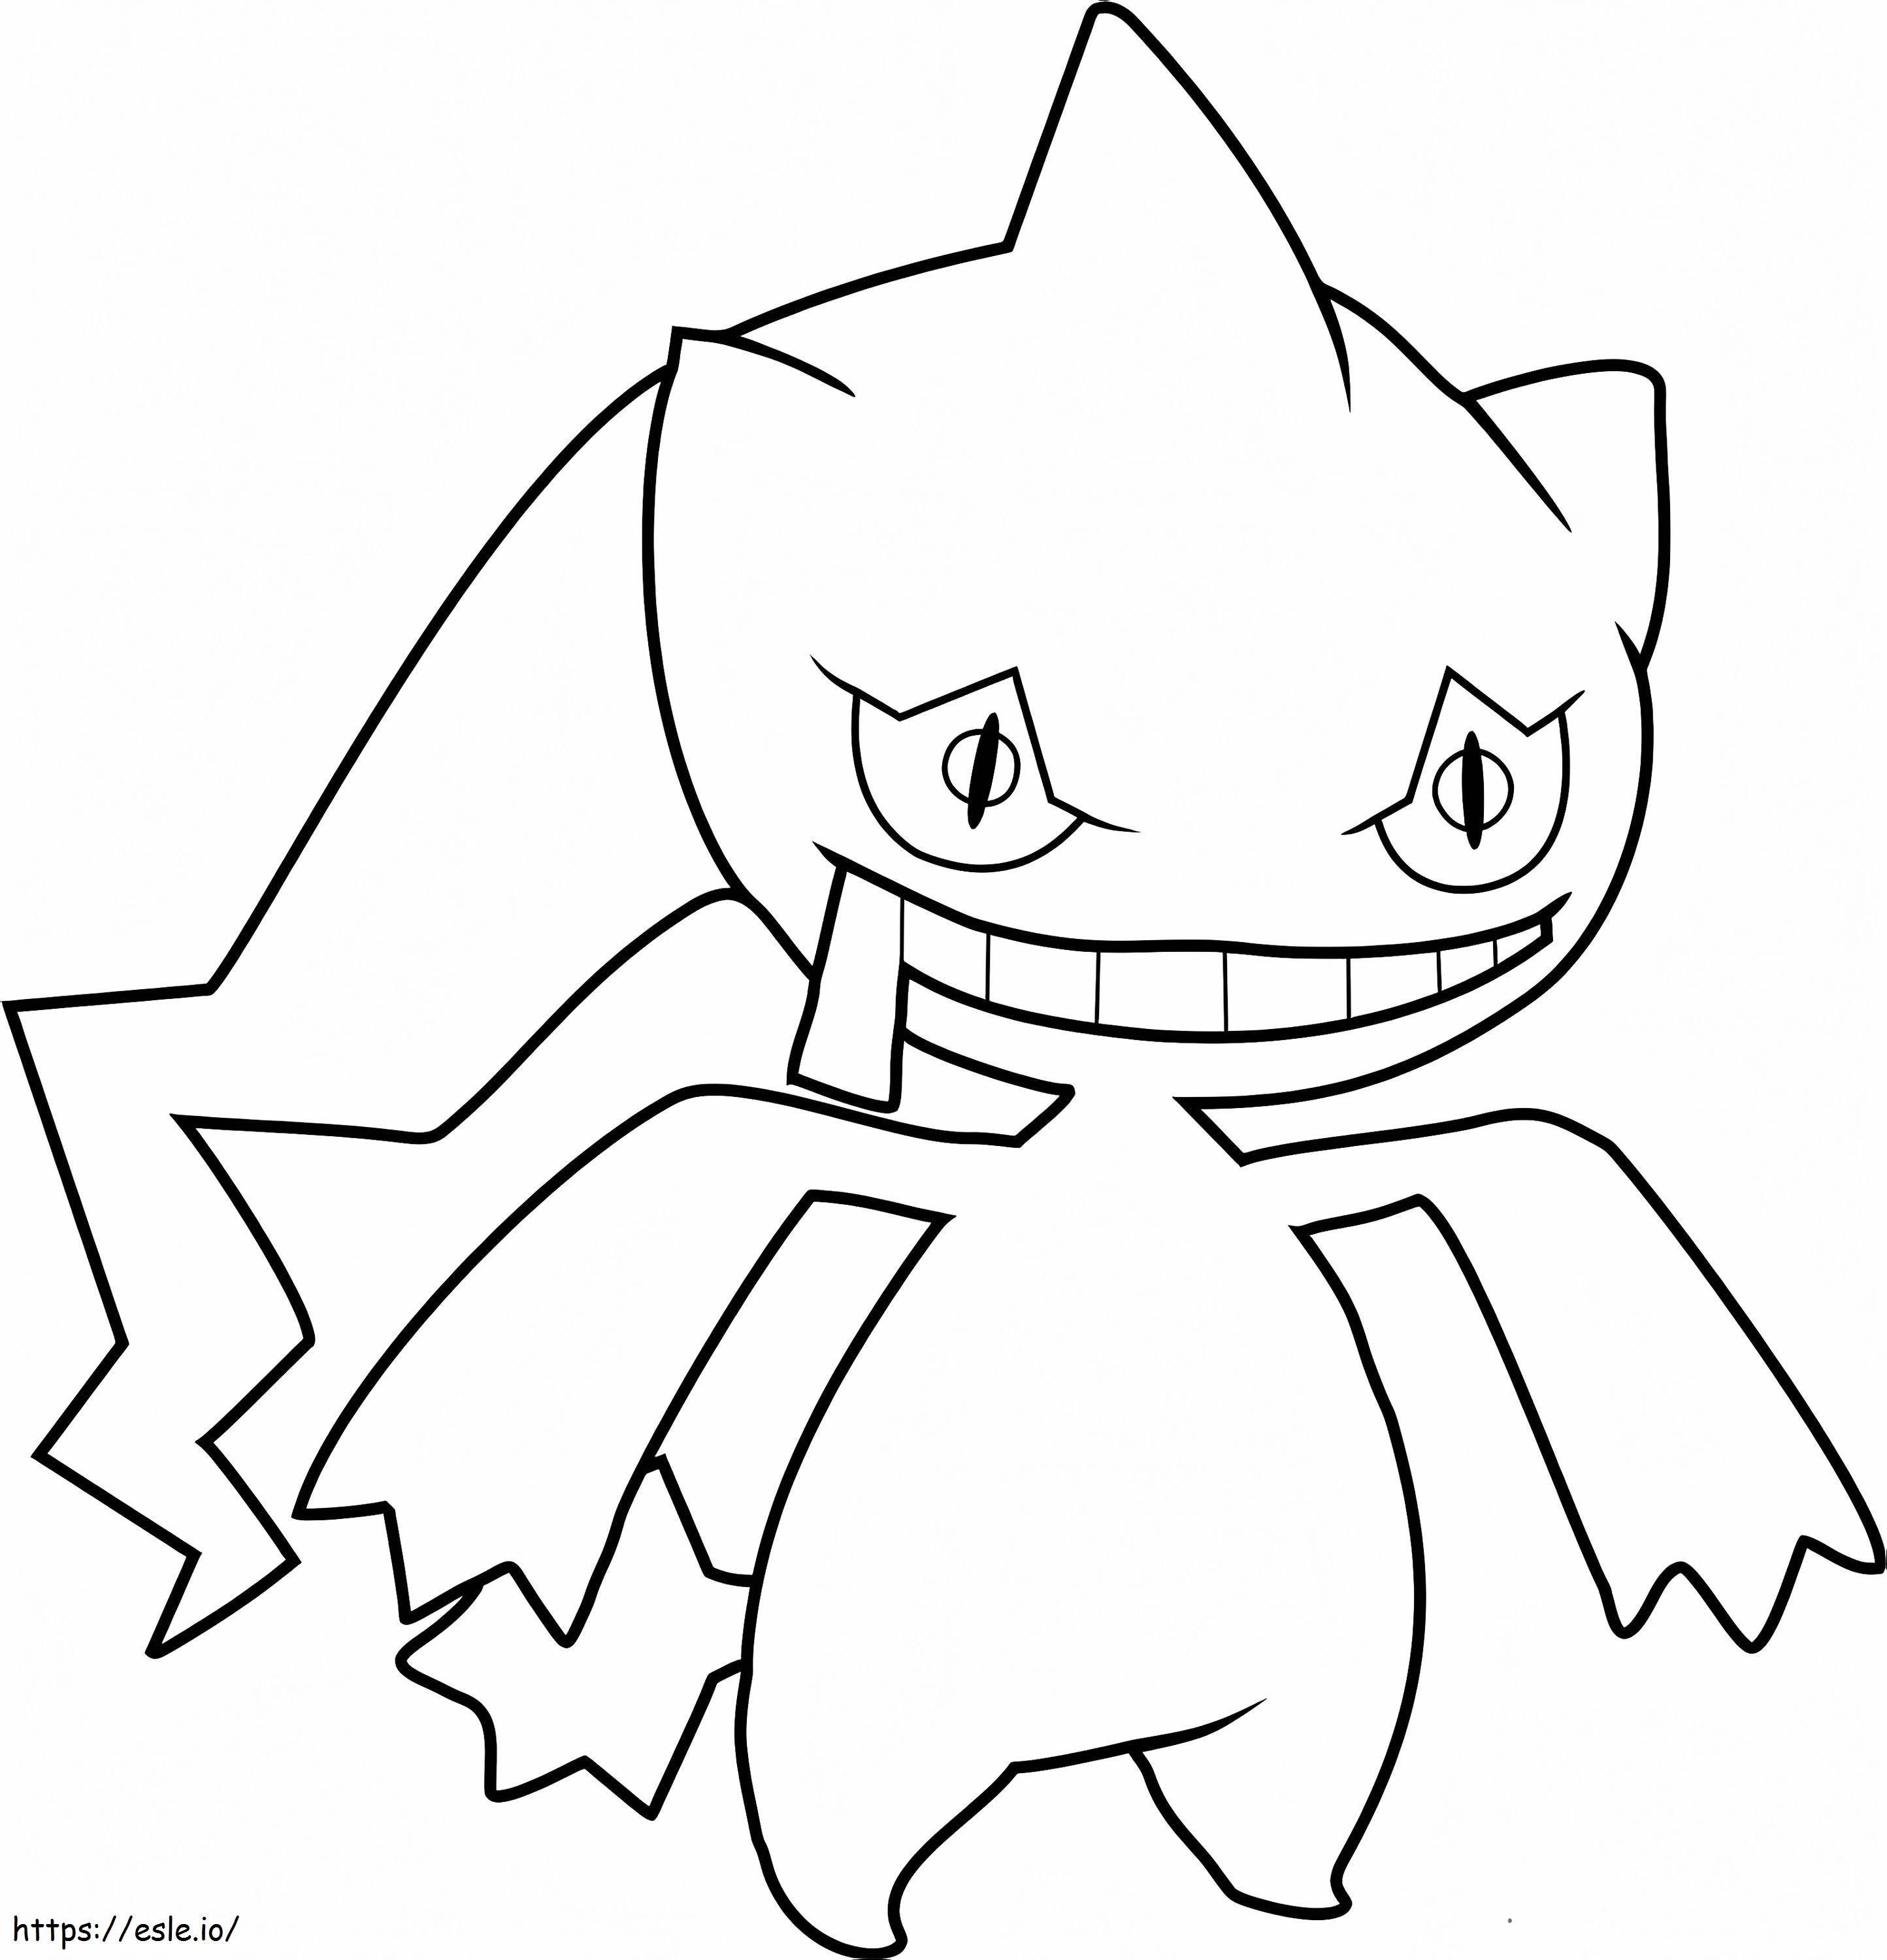 Banette-Pokémon ausmalbilder